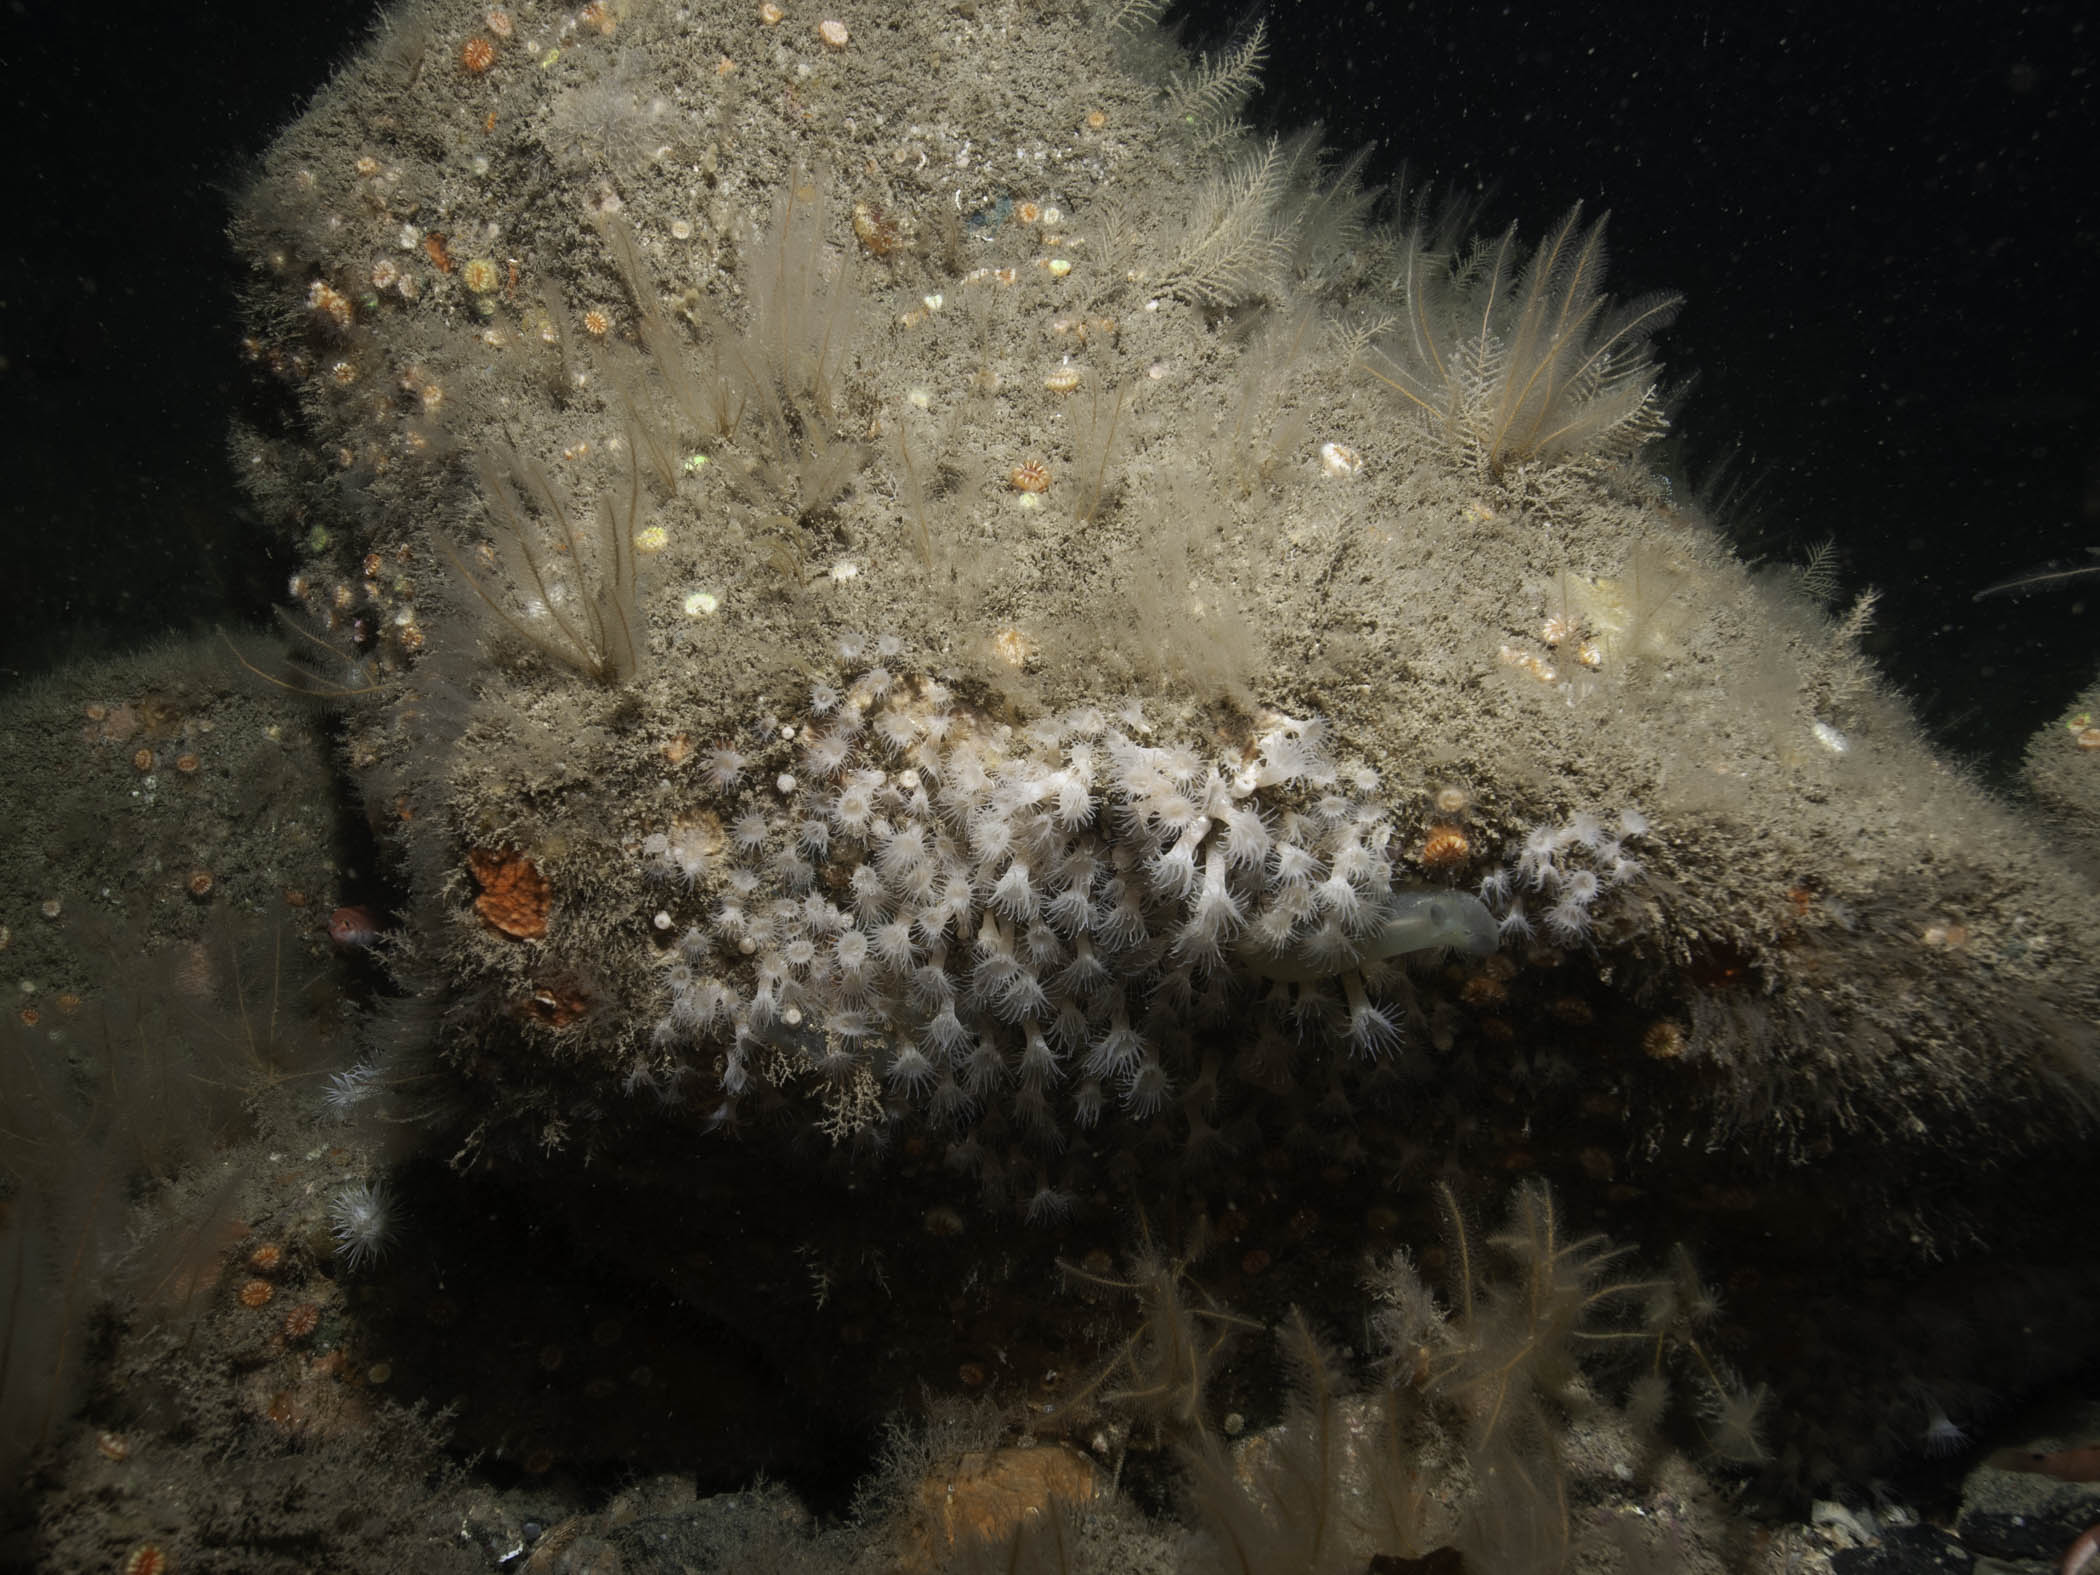 image: Parazoanthus anguicomus. Rathlin Island, 2008.